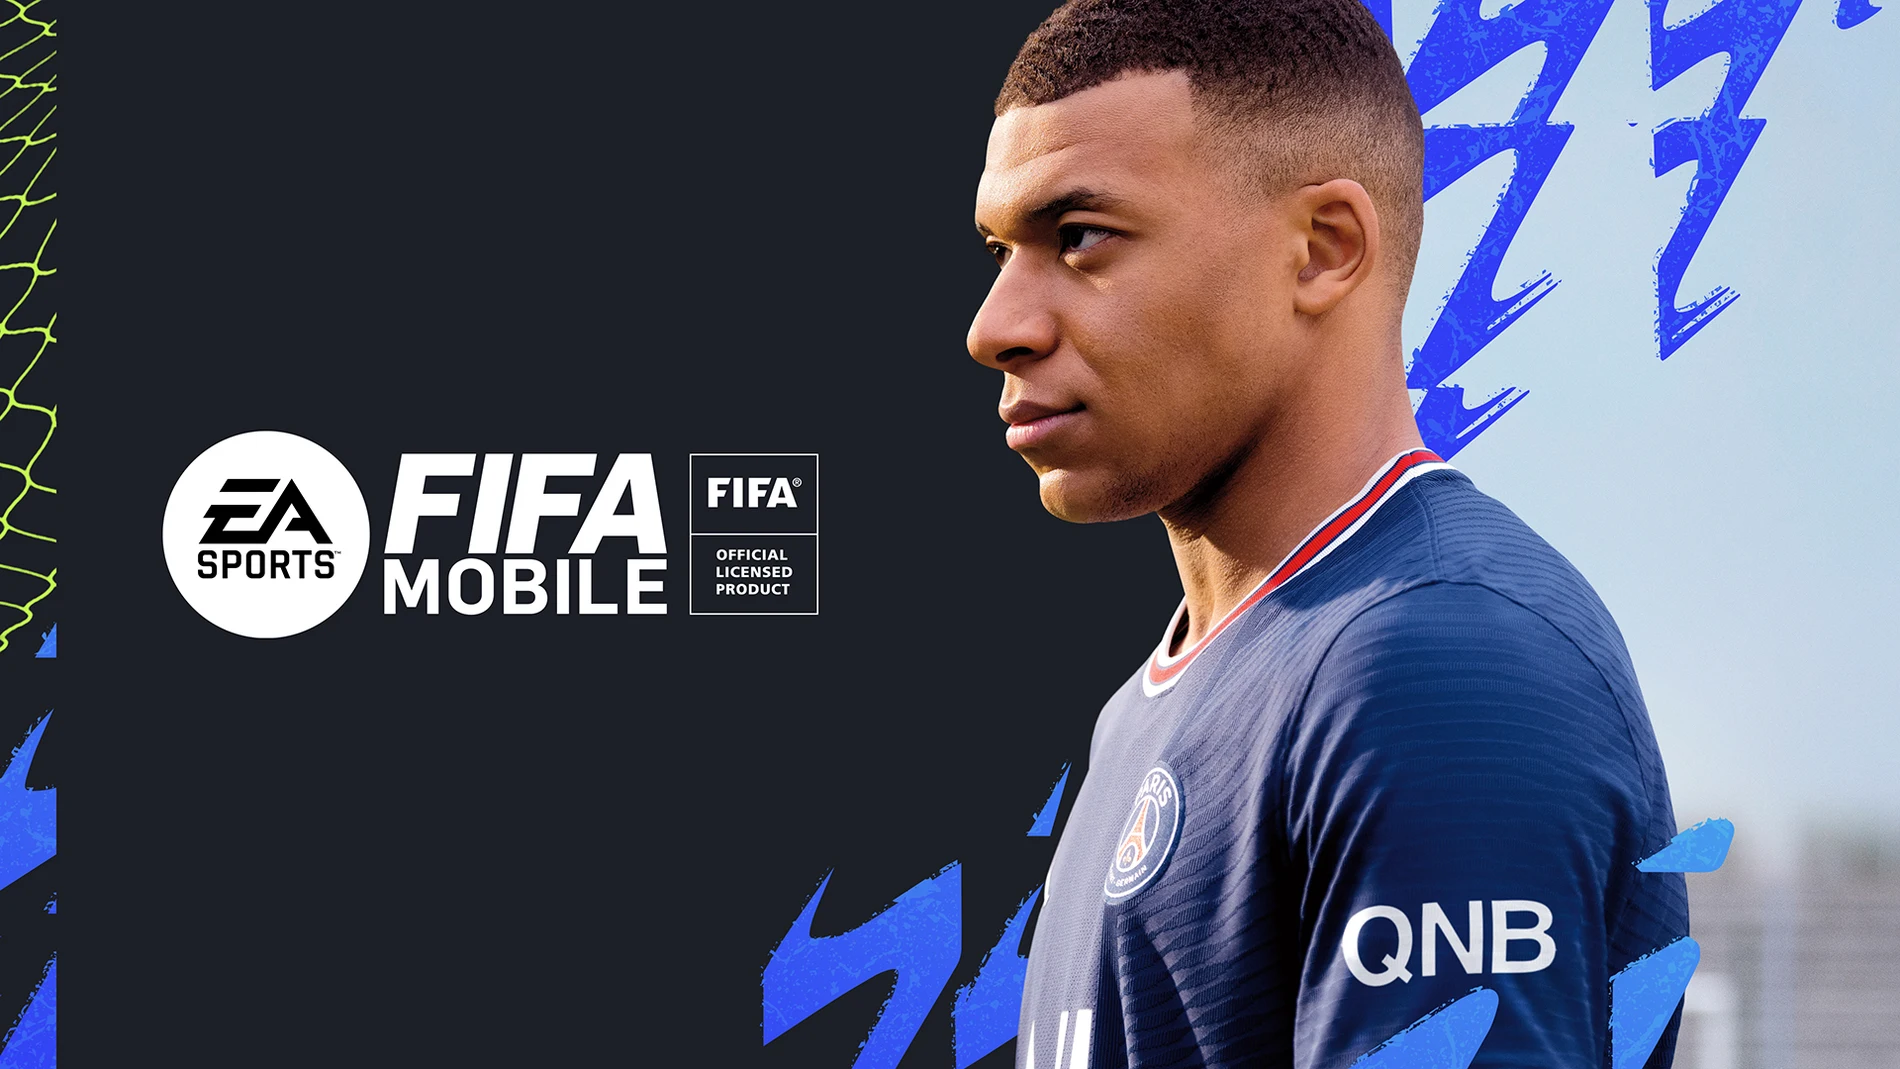 La actualización para FIFA Mobile ya está disponible para su descarga en App Store y Play Store.